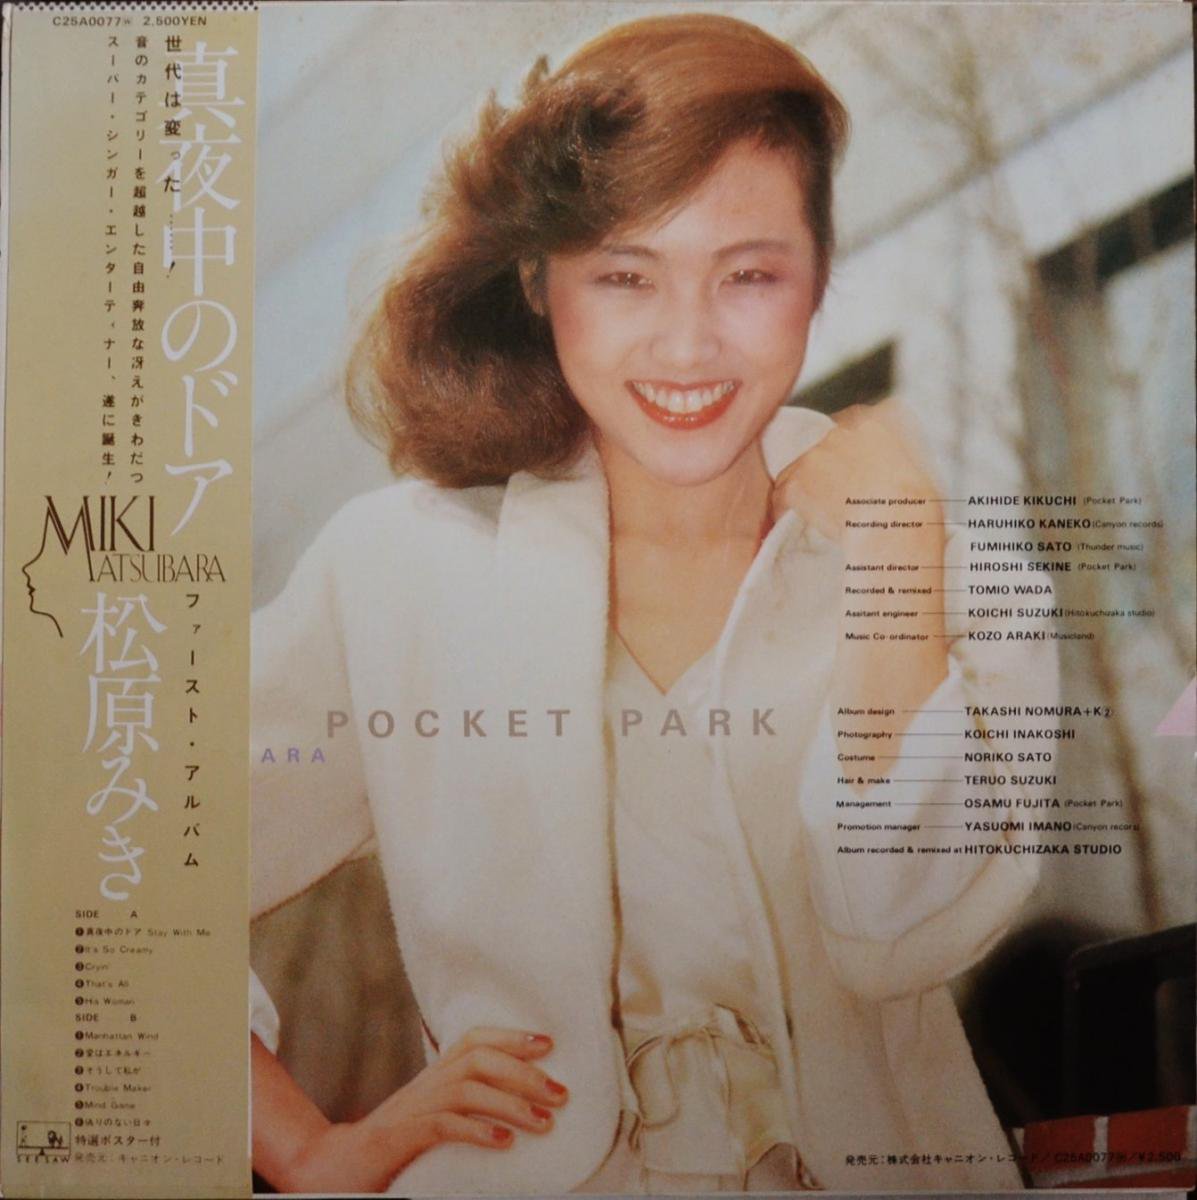 松原みき MIKI MATSUBARA / ポケットパーク POCKET PARK (LP) - HIP 